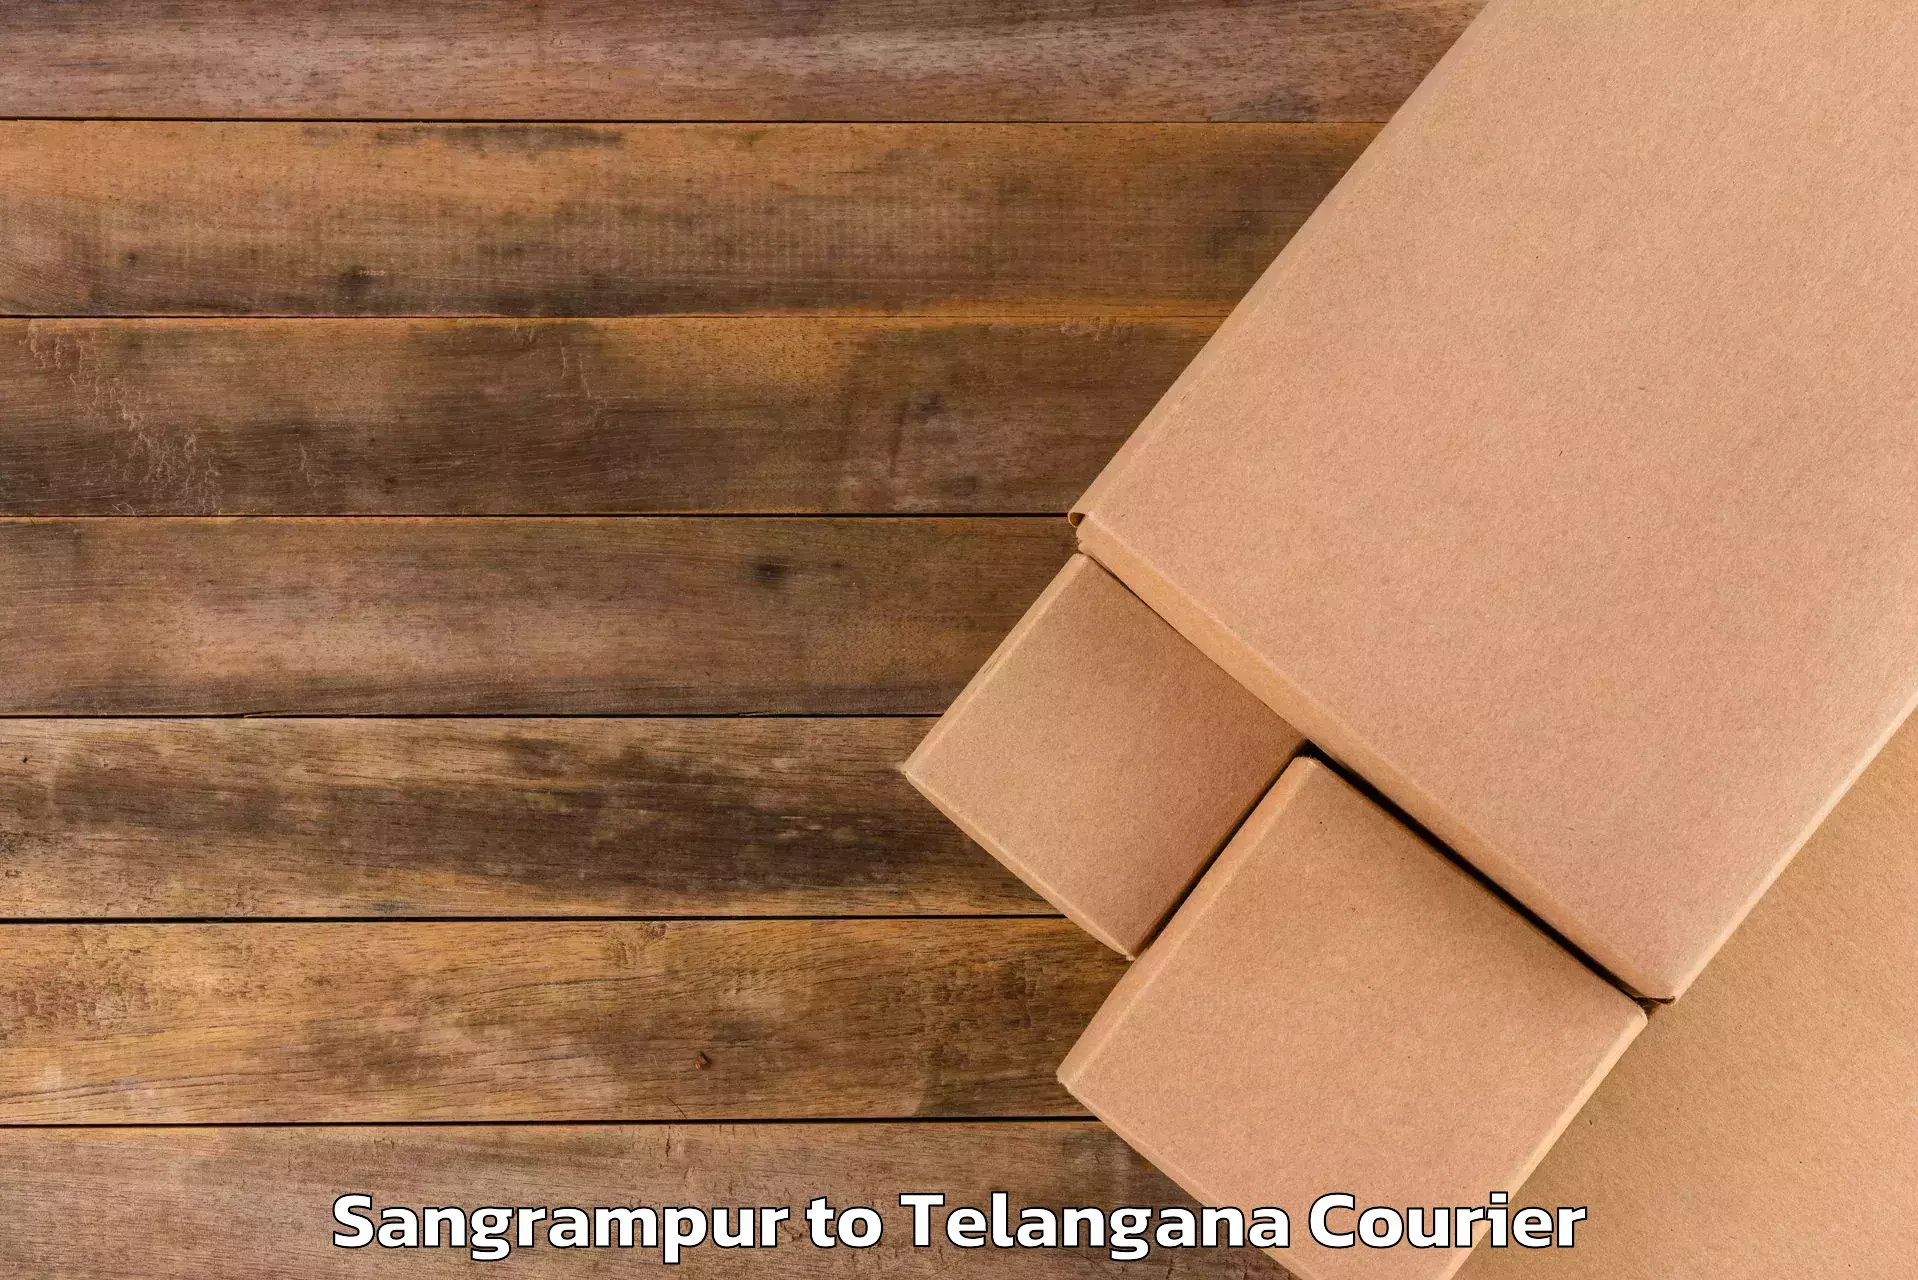 Hassle-free luggage shipping in Sangrampur to Telangana